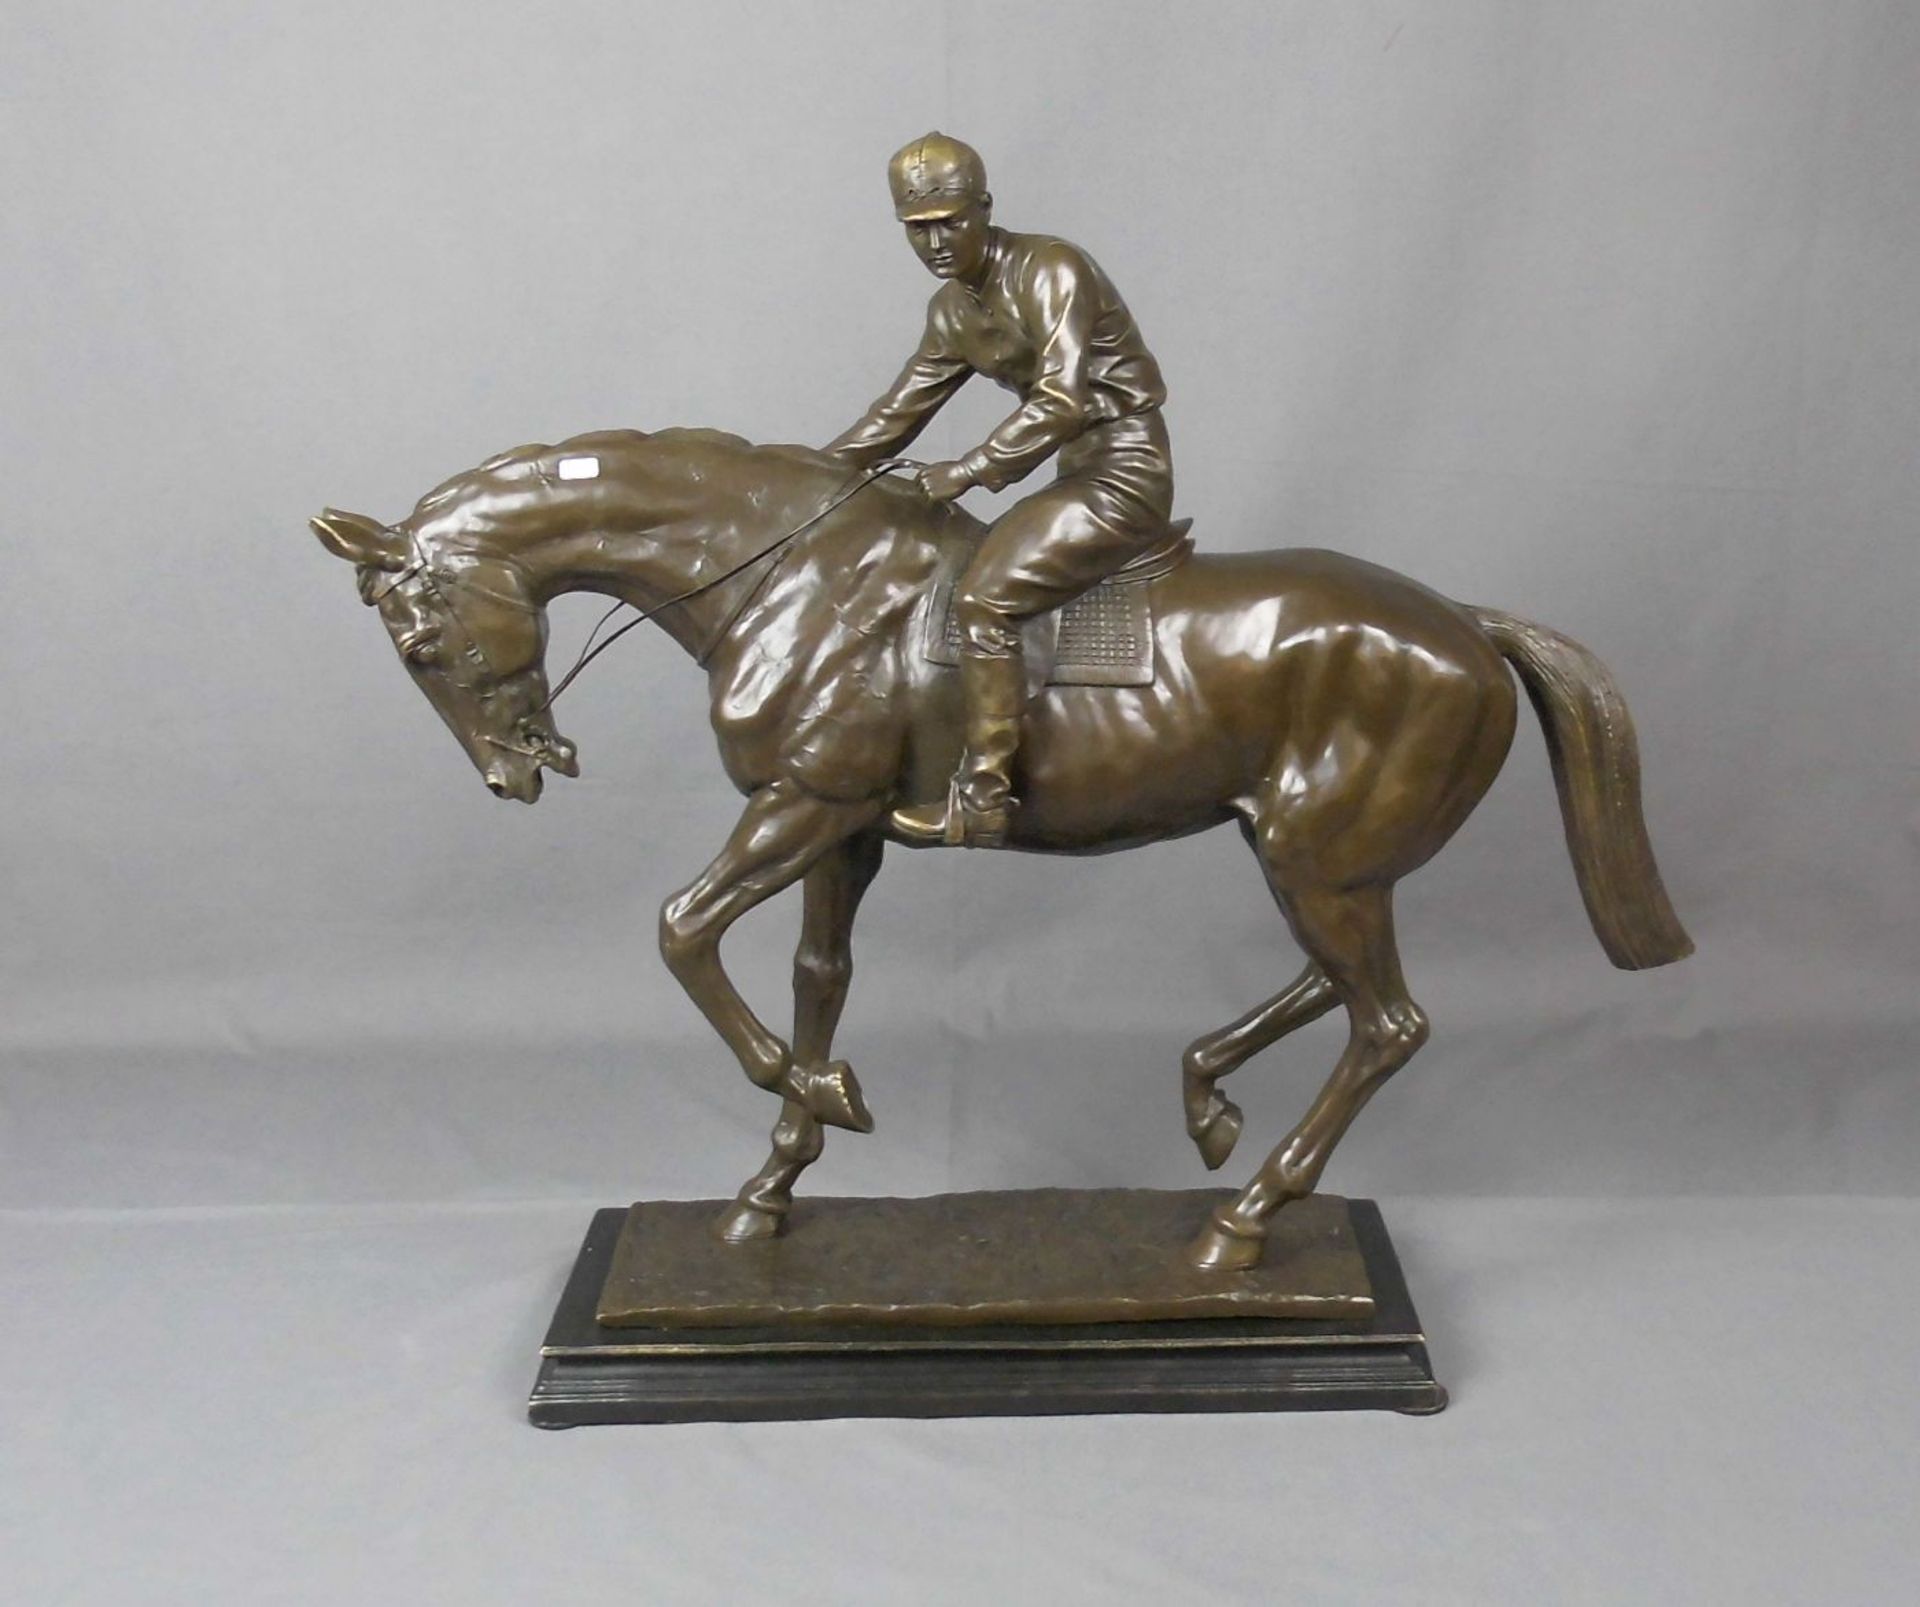 ANONYMUS (Bildhauer des 20.), Skulptur / sculpture: "Jockey auf einem jungen Hengst", Bronze,